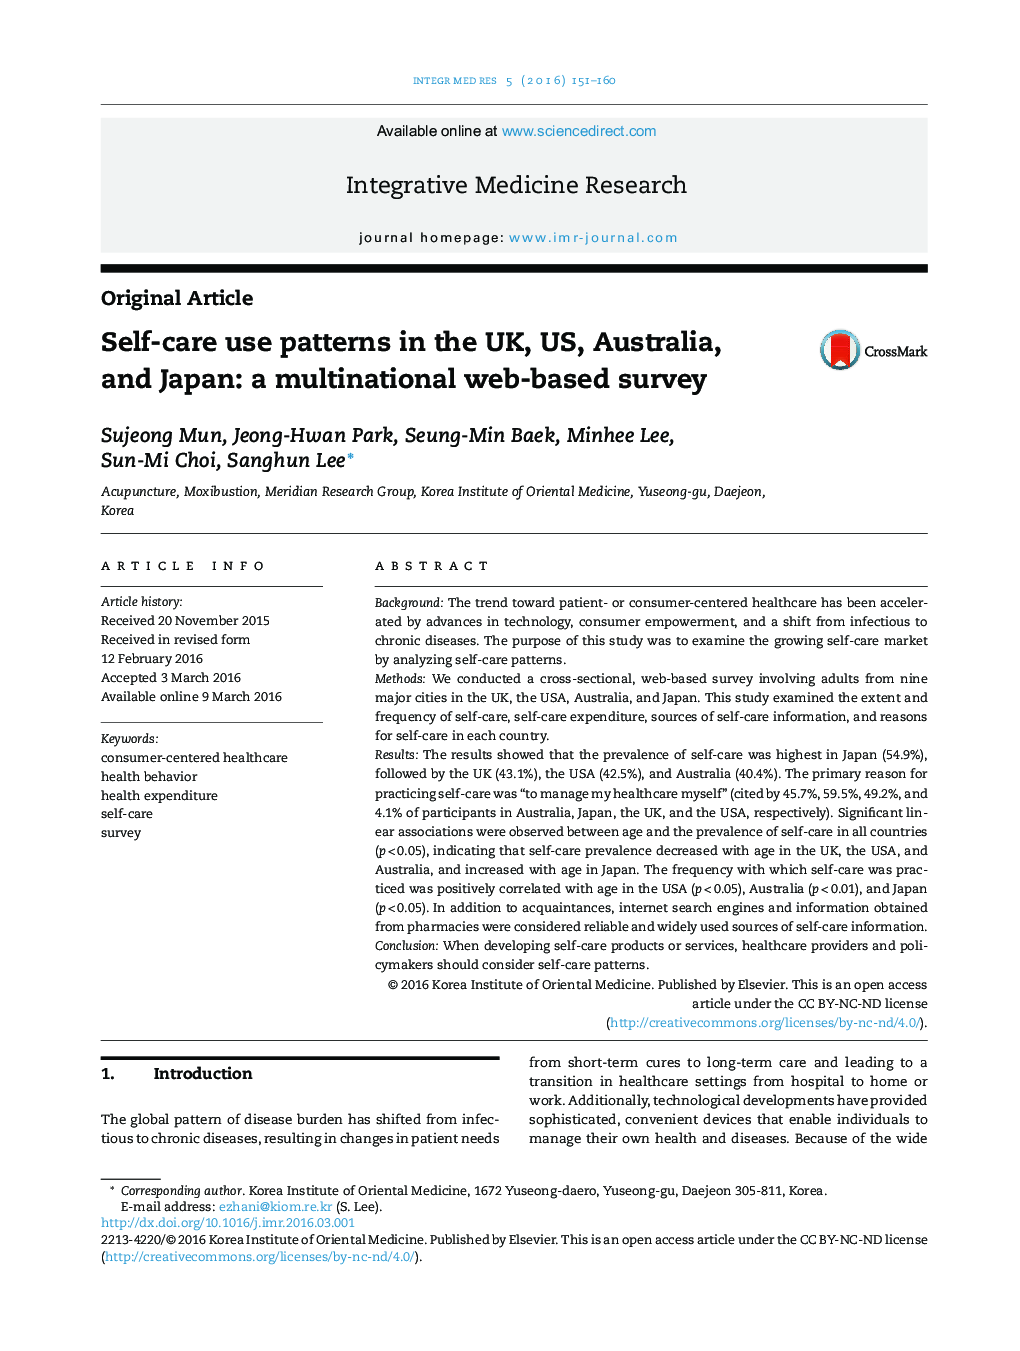 الگوهای استفاده از خودمراقبتی در انگلستان، آمریکا، استرالیا و ژاپن: یک بررسی مبتنی بر وب چندملیتی